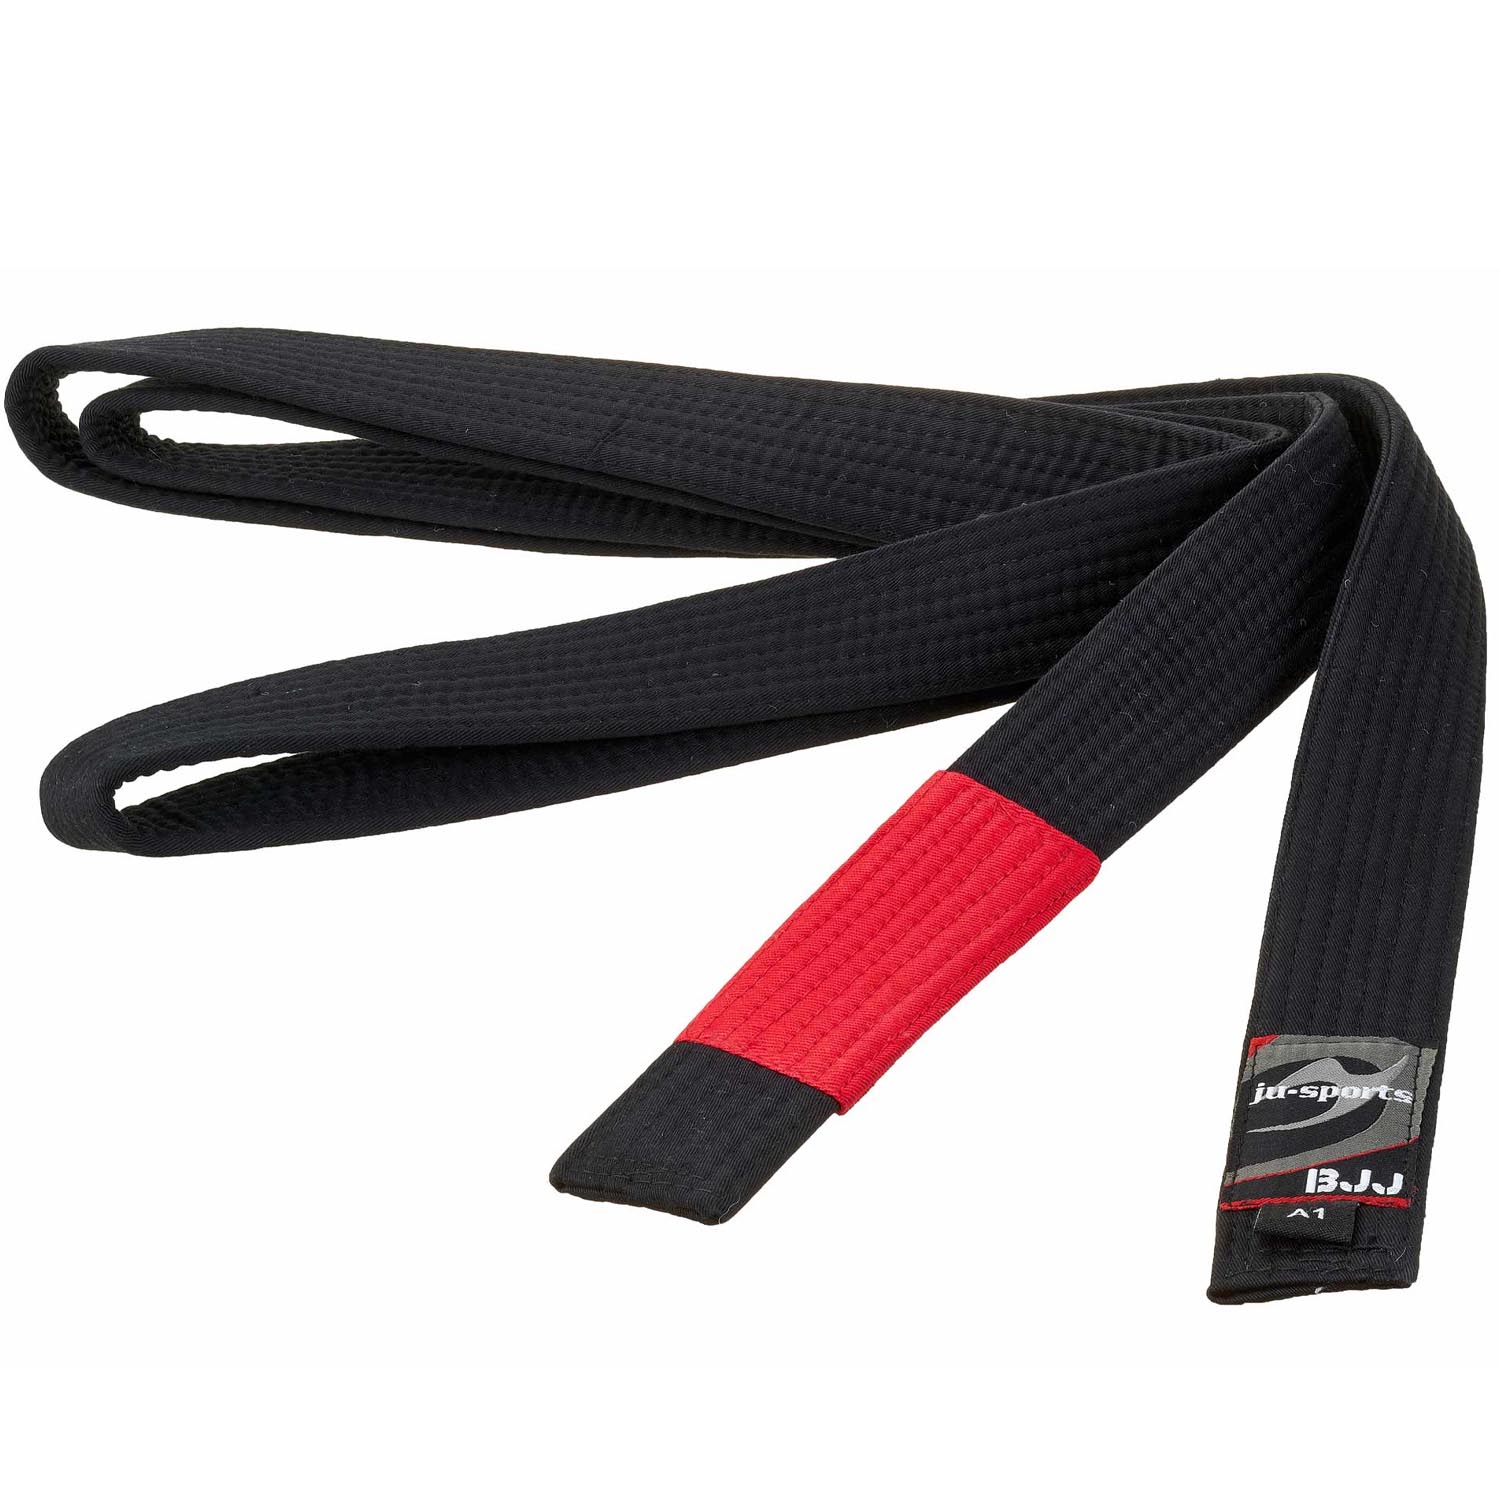 Ju-Sports BJJ Belt, black A1